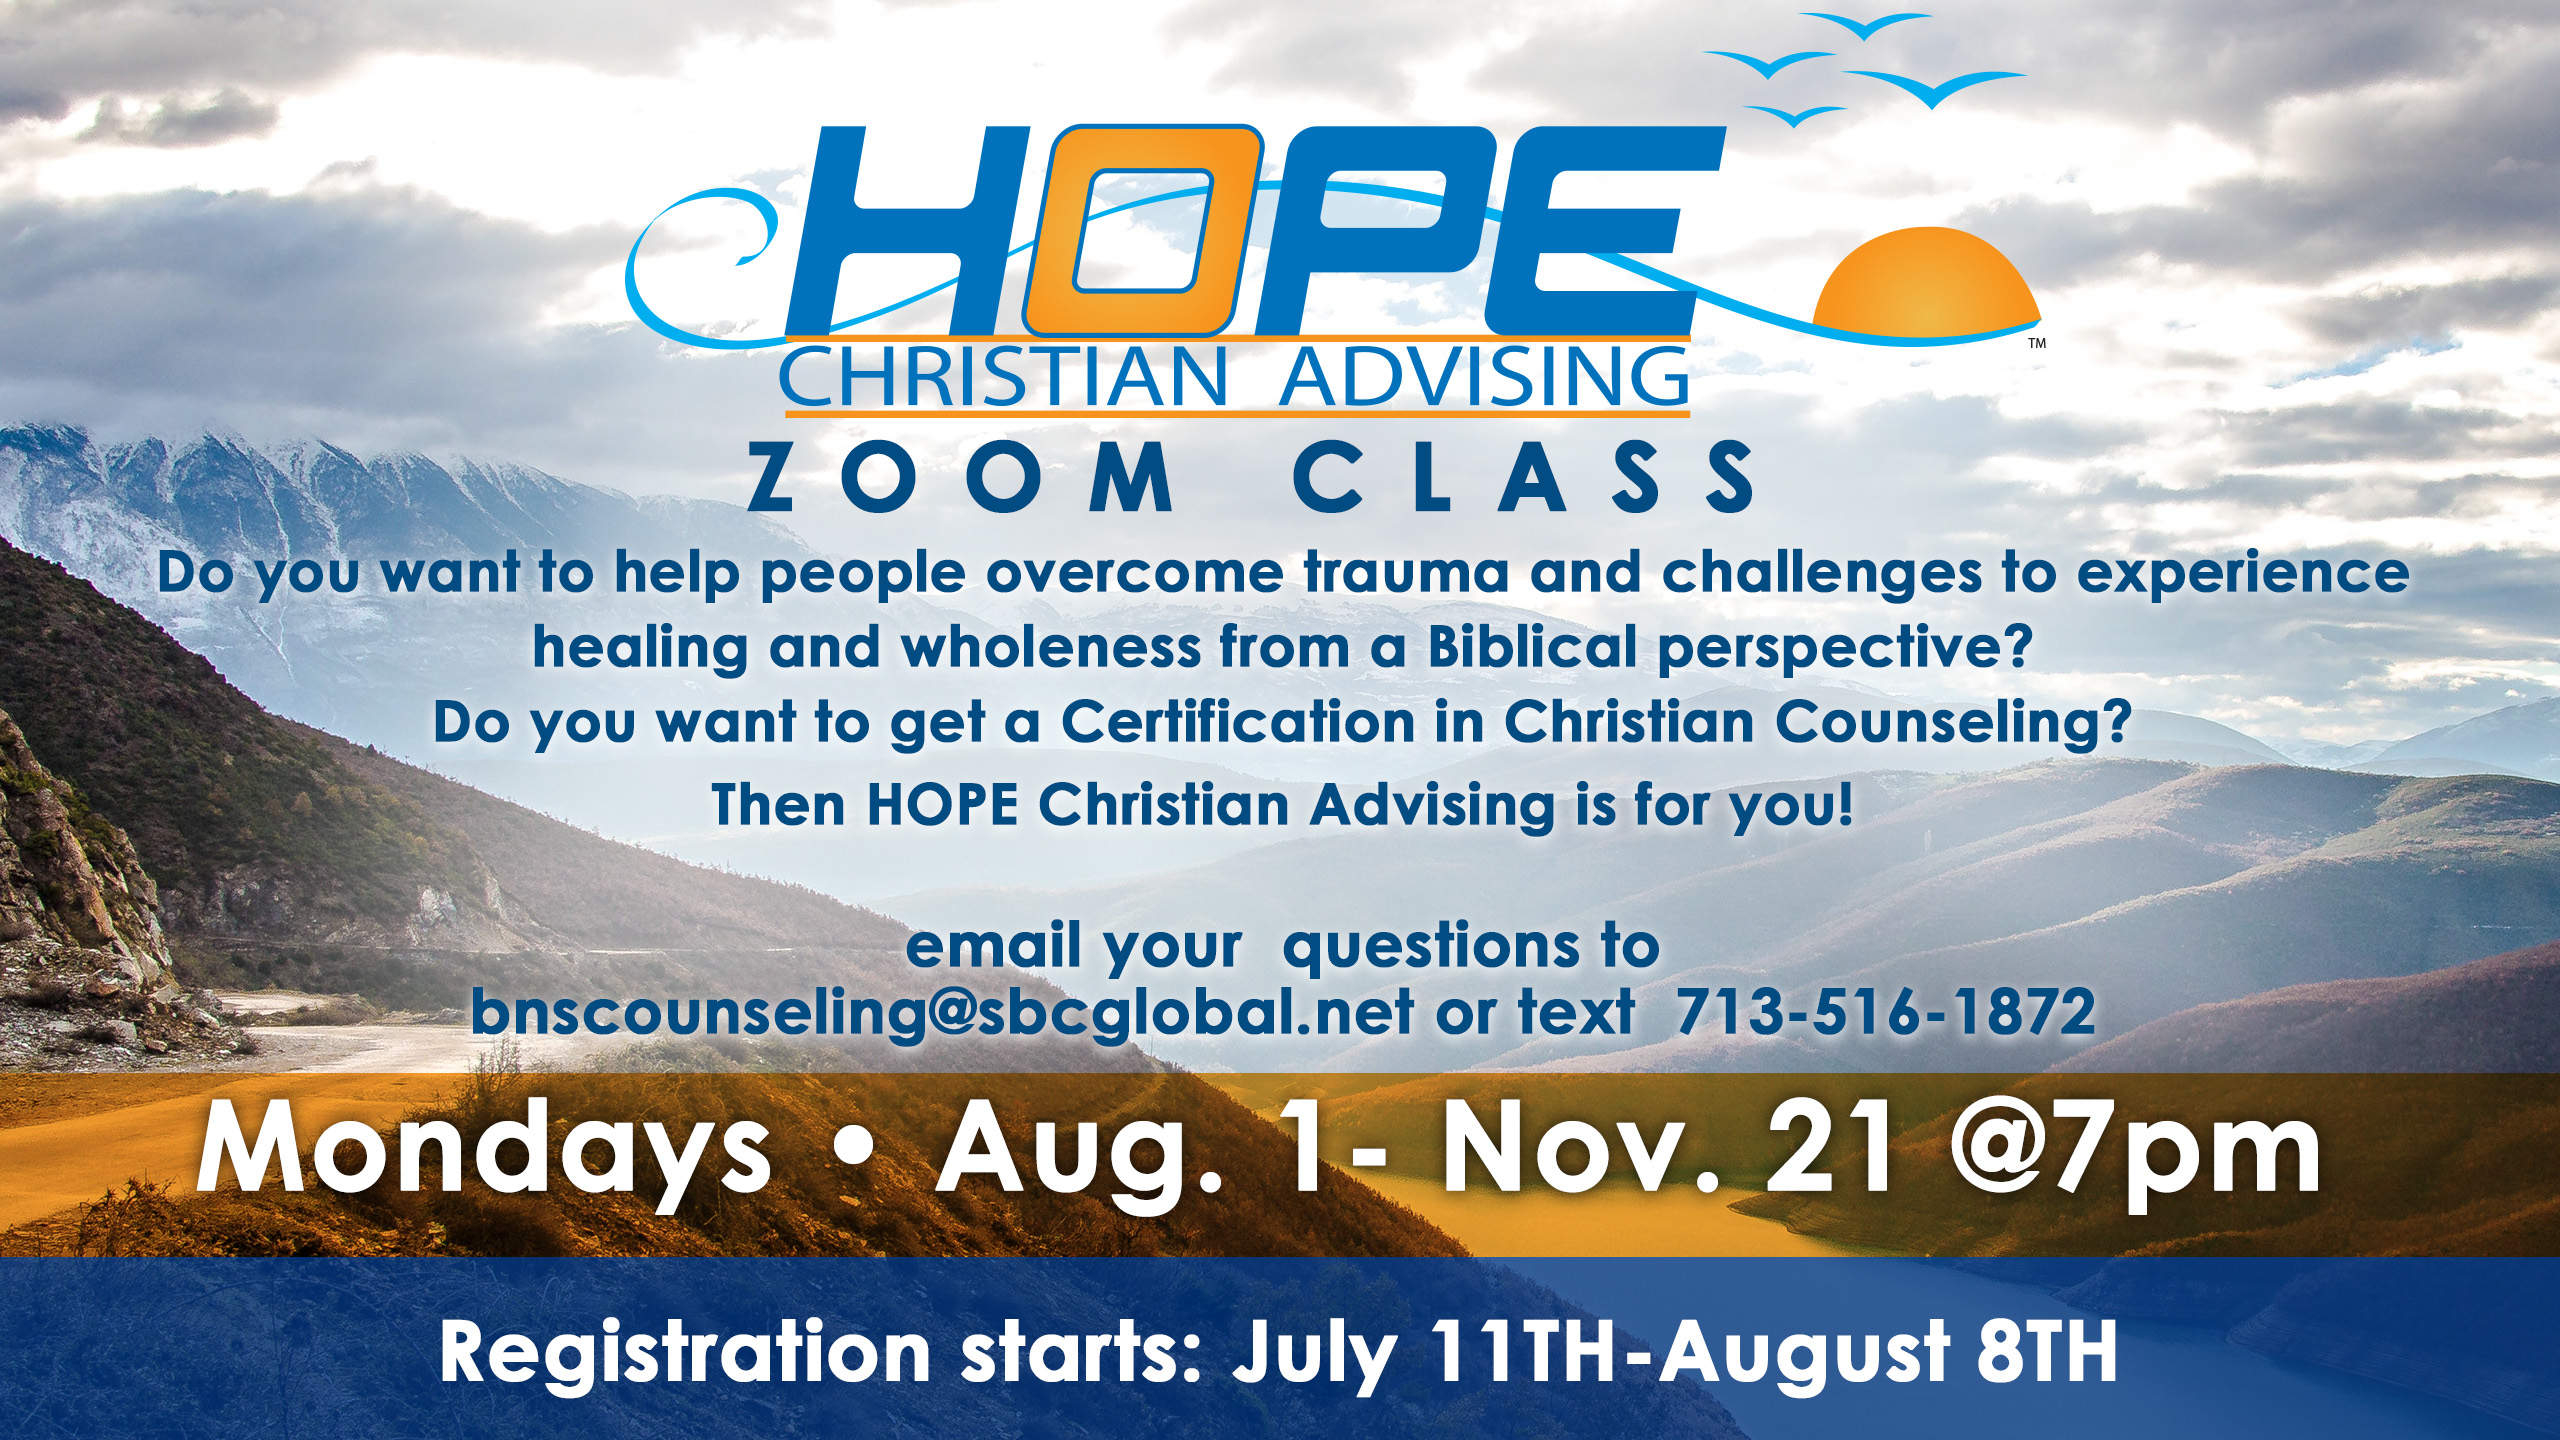 https://www.eventbrite.com/e/hope-christian-advising-zoom-classes-tickets-389739279677